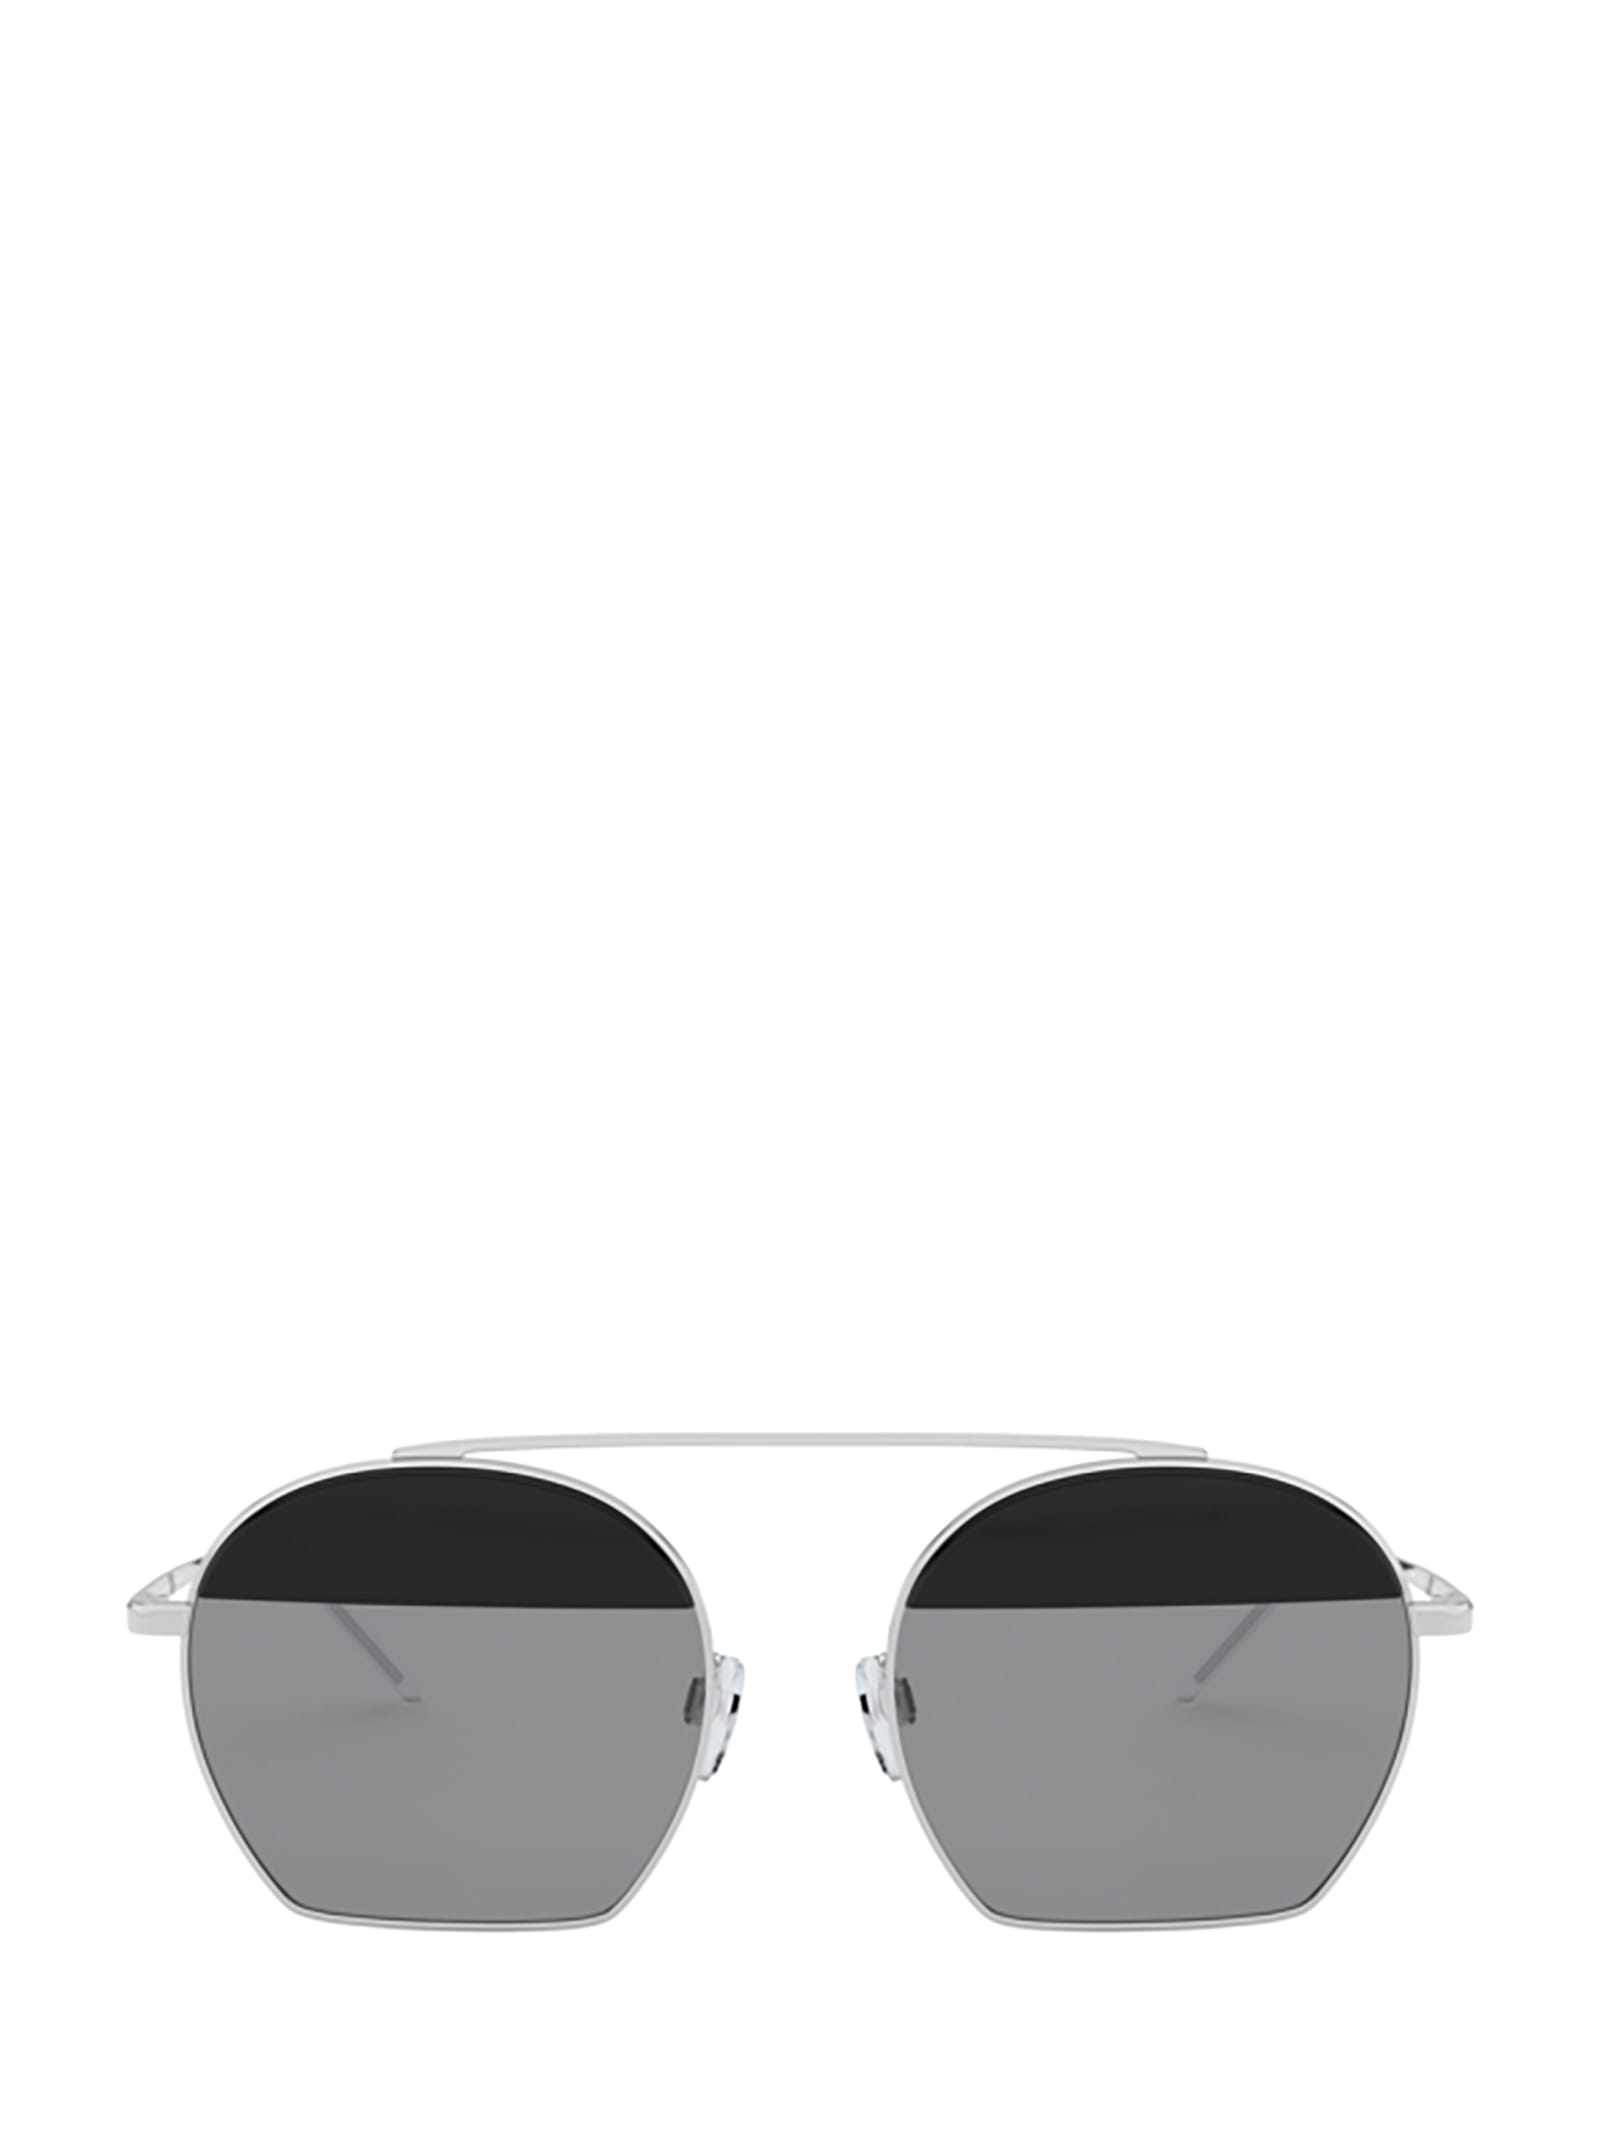 Emporio Armani Emporio Armani Ea2086 Silver Sunglasses